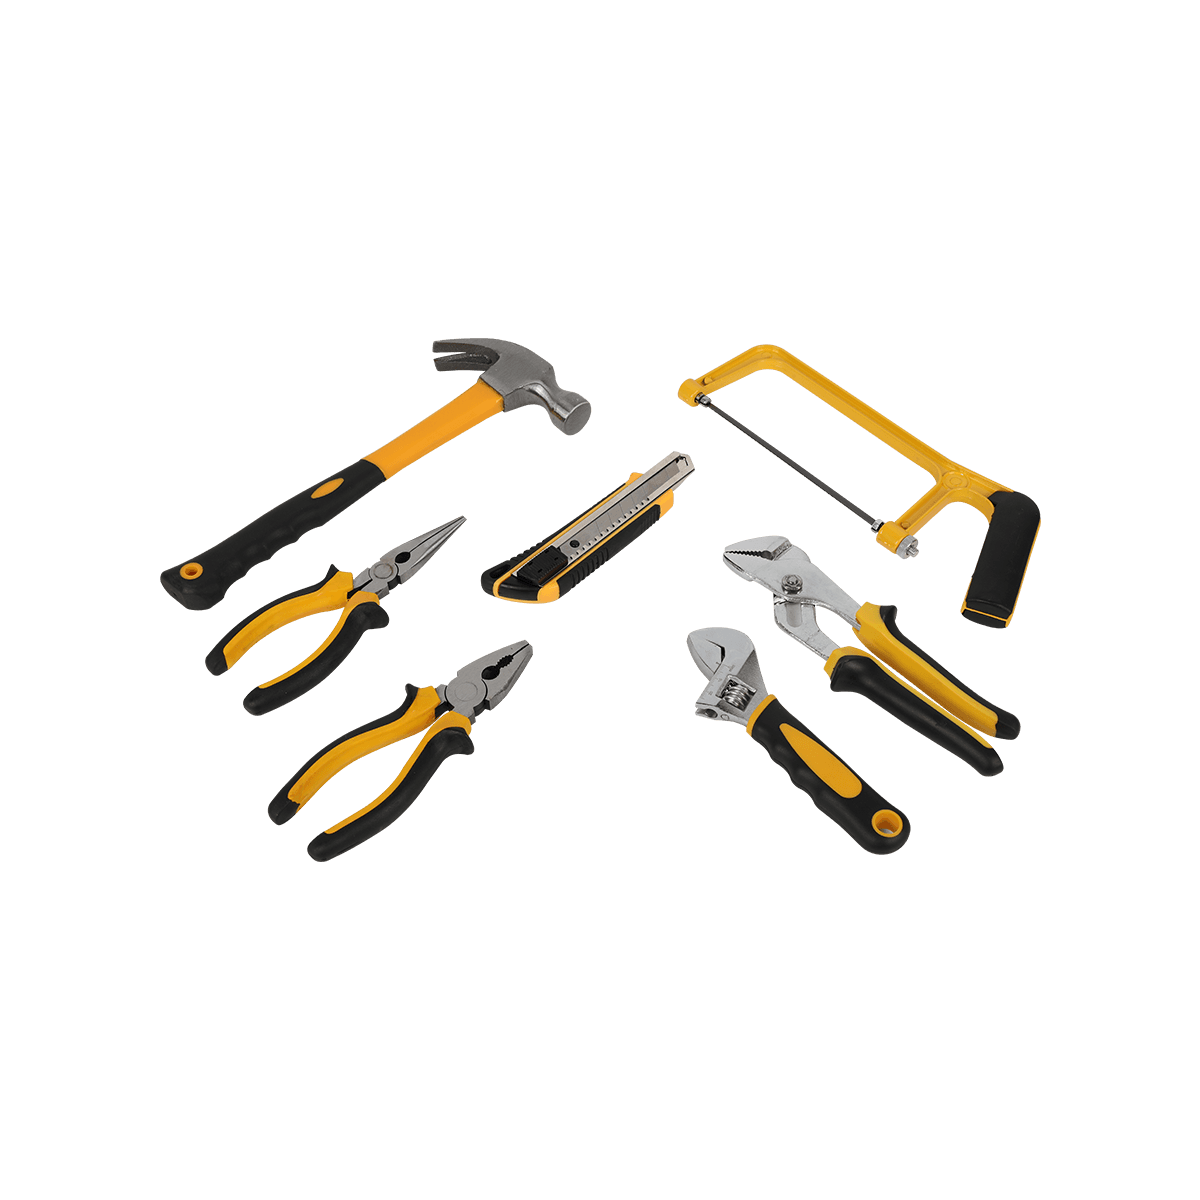 168 stuks Dopsleutel Auto Reparatie Gereedschap Set Combinatie Mixed Hand Tool Kit met Plastic Toolbox Opbergkoffer